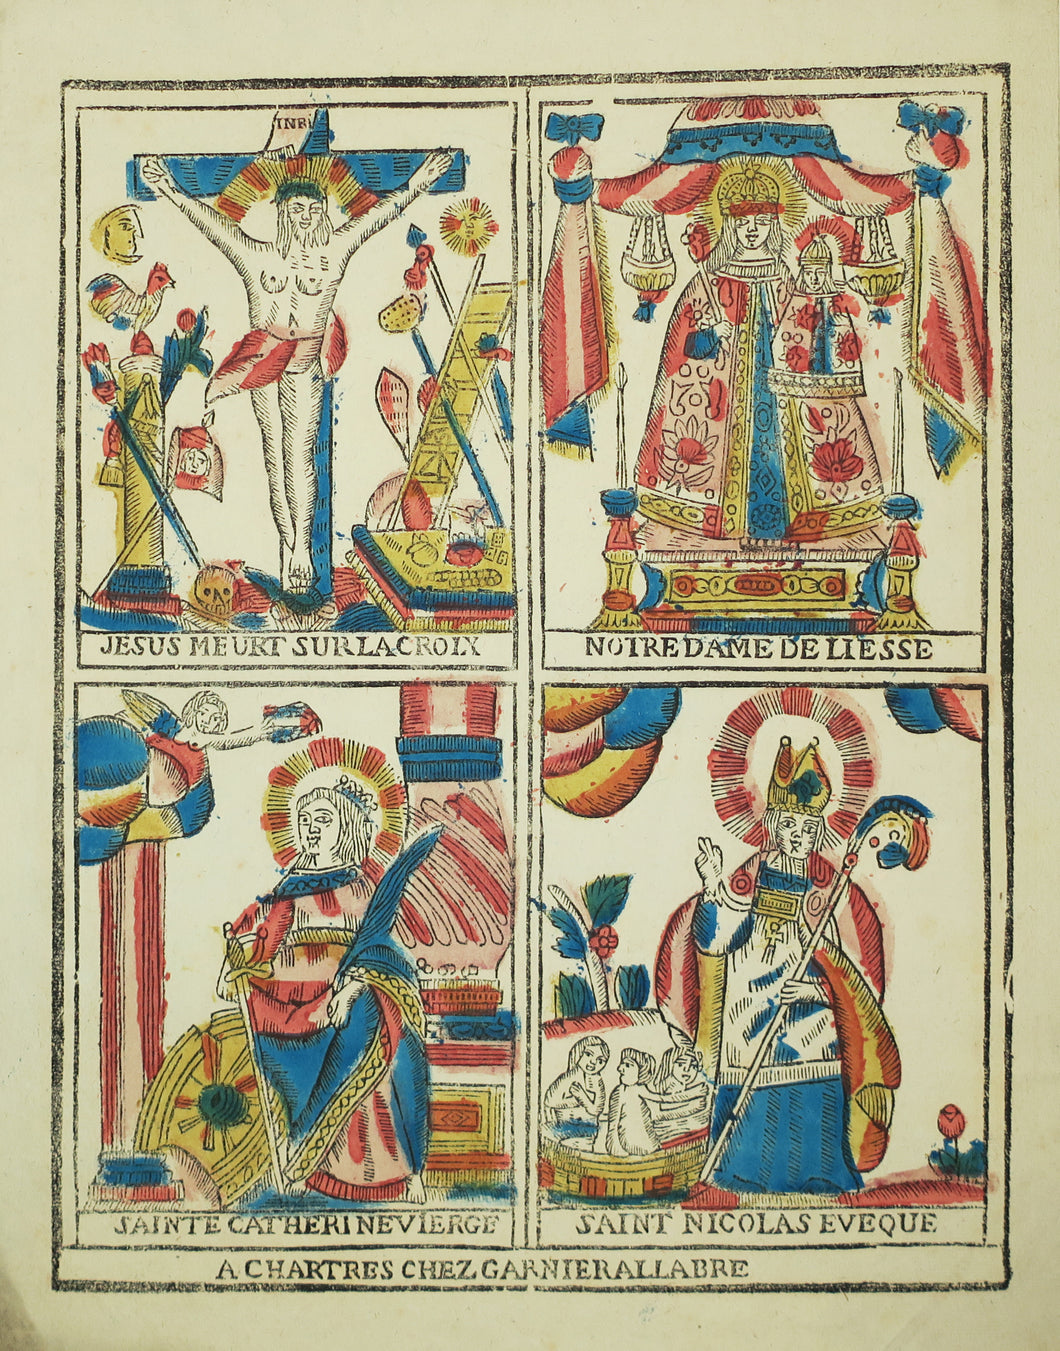 Page de 4 sujets: Jésus meurt sur la croix; Notre-Dame de Liesse; Sainte Catherine Vierge & Saint Nicolas Evêque.